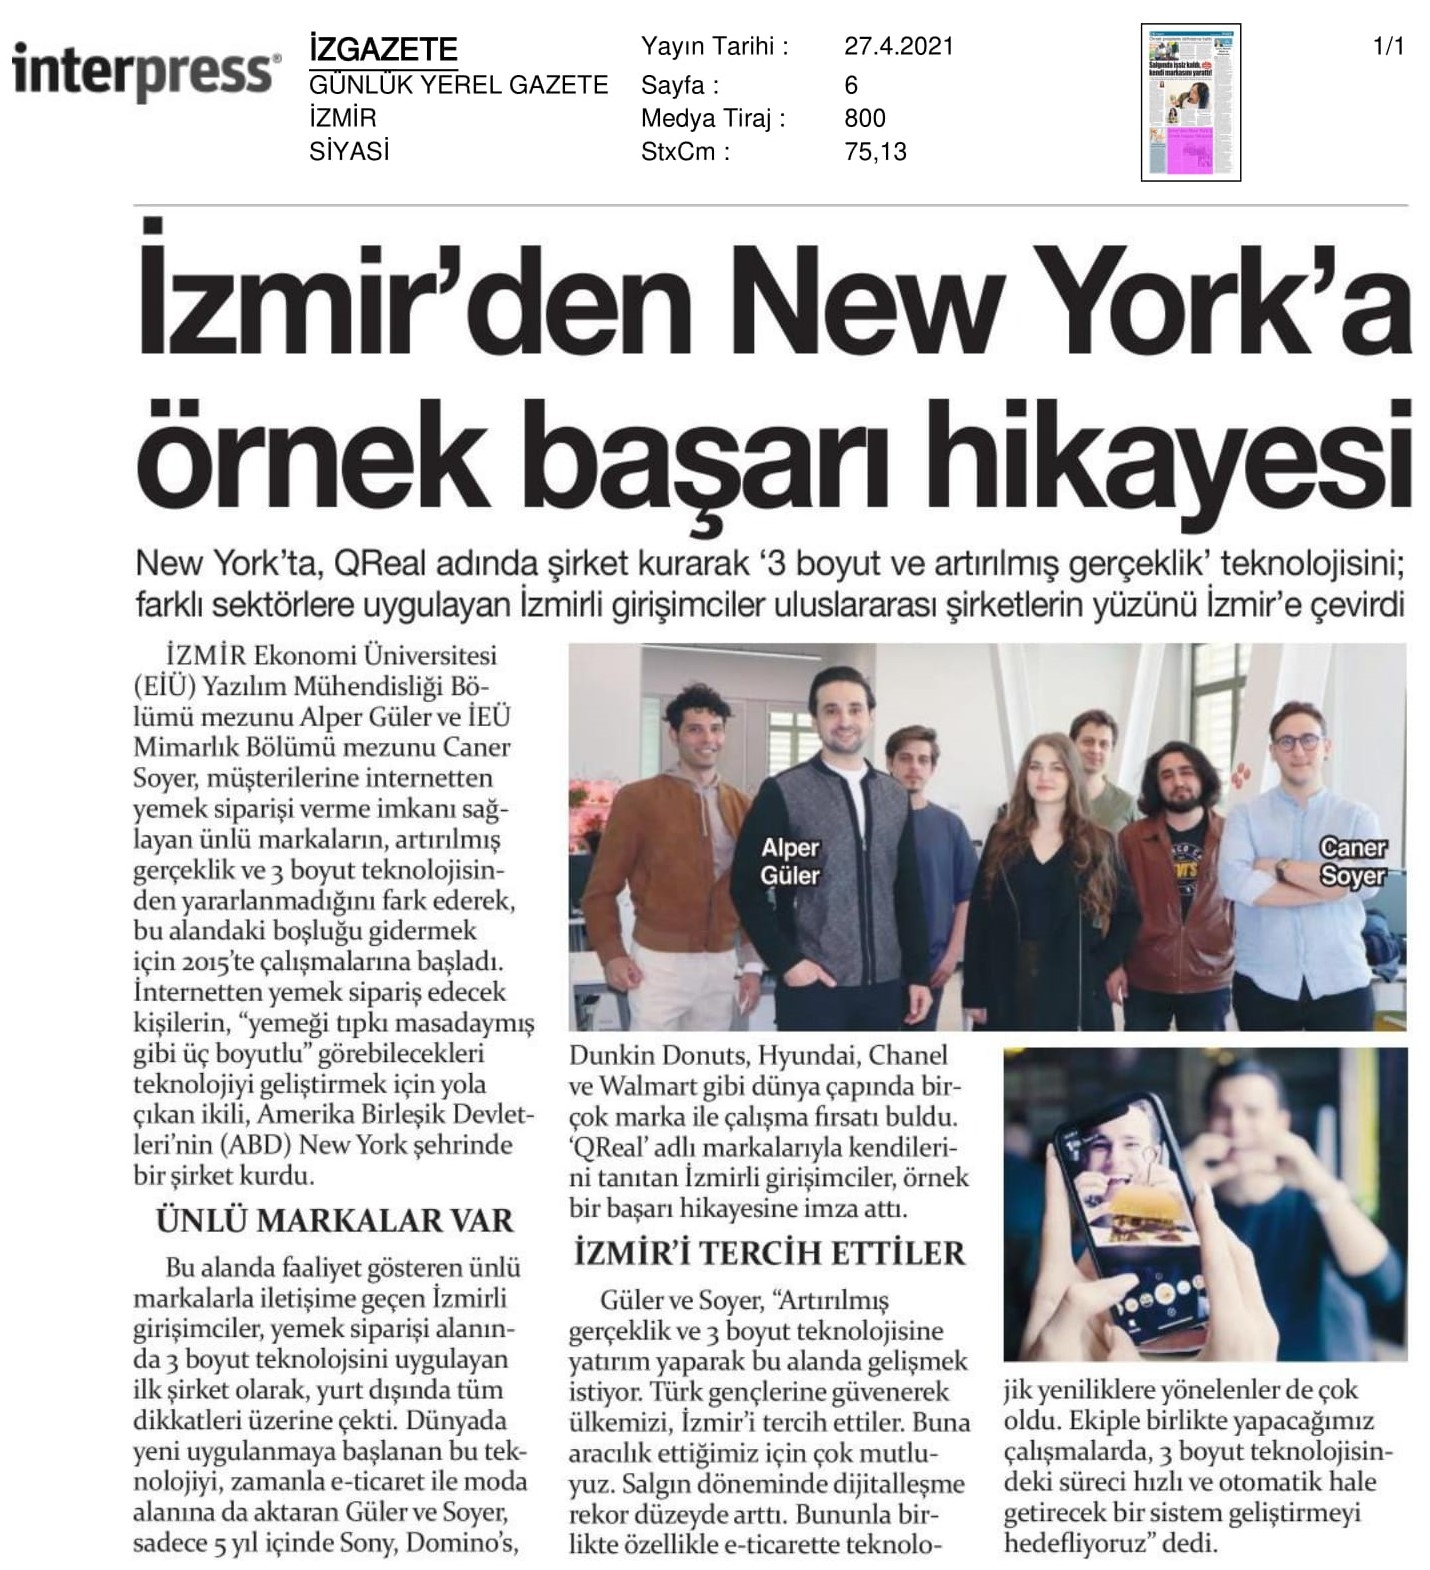 İzmir’den New York’a uzanan '3 boyutlu’ başarı